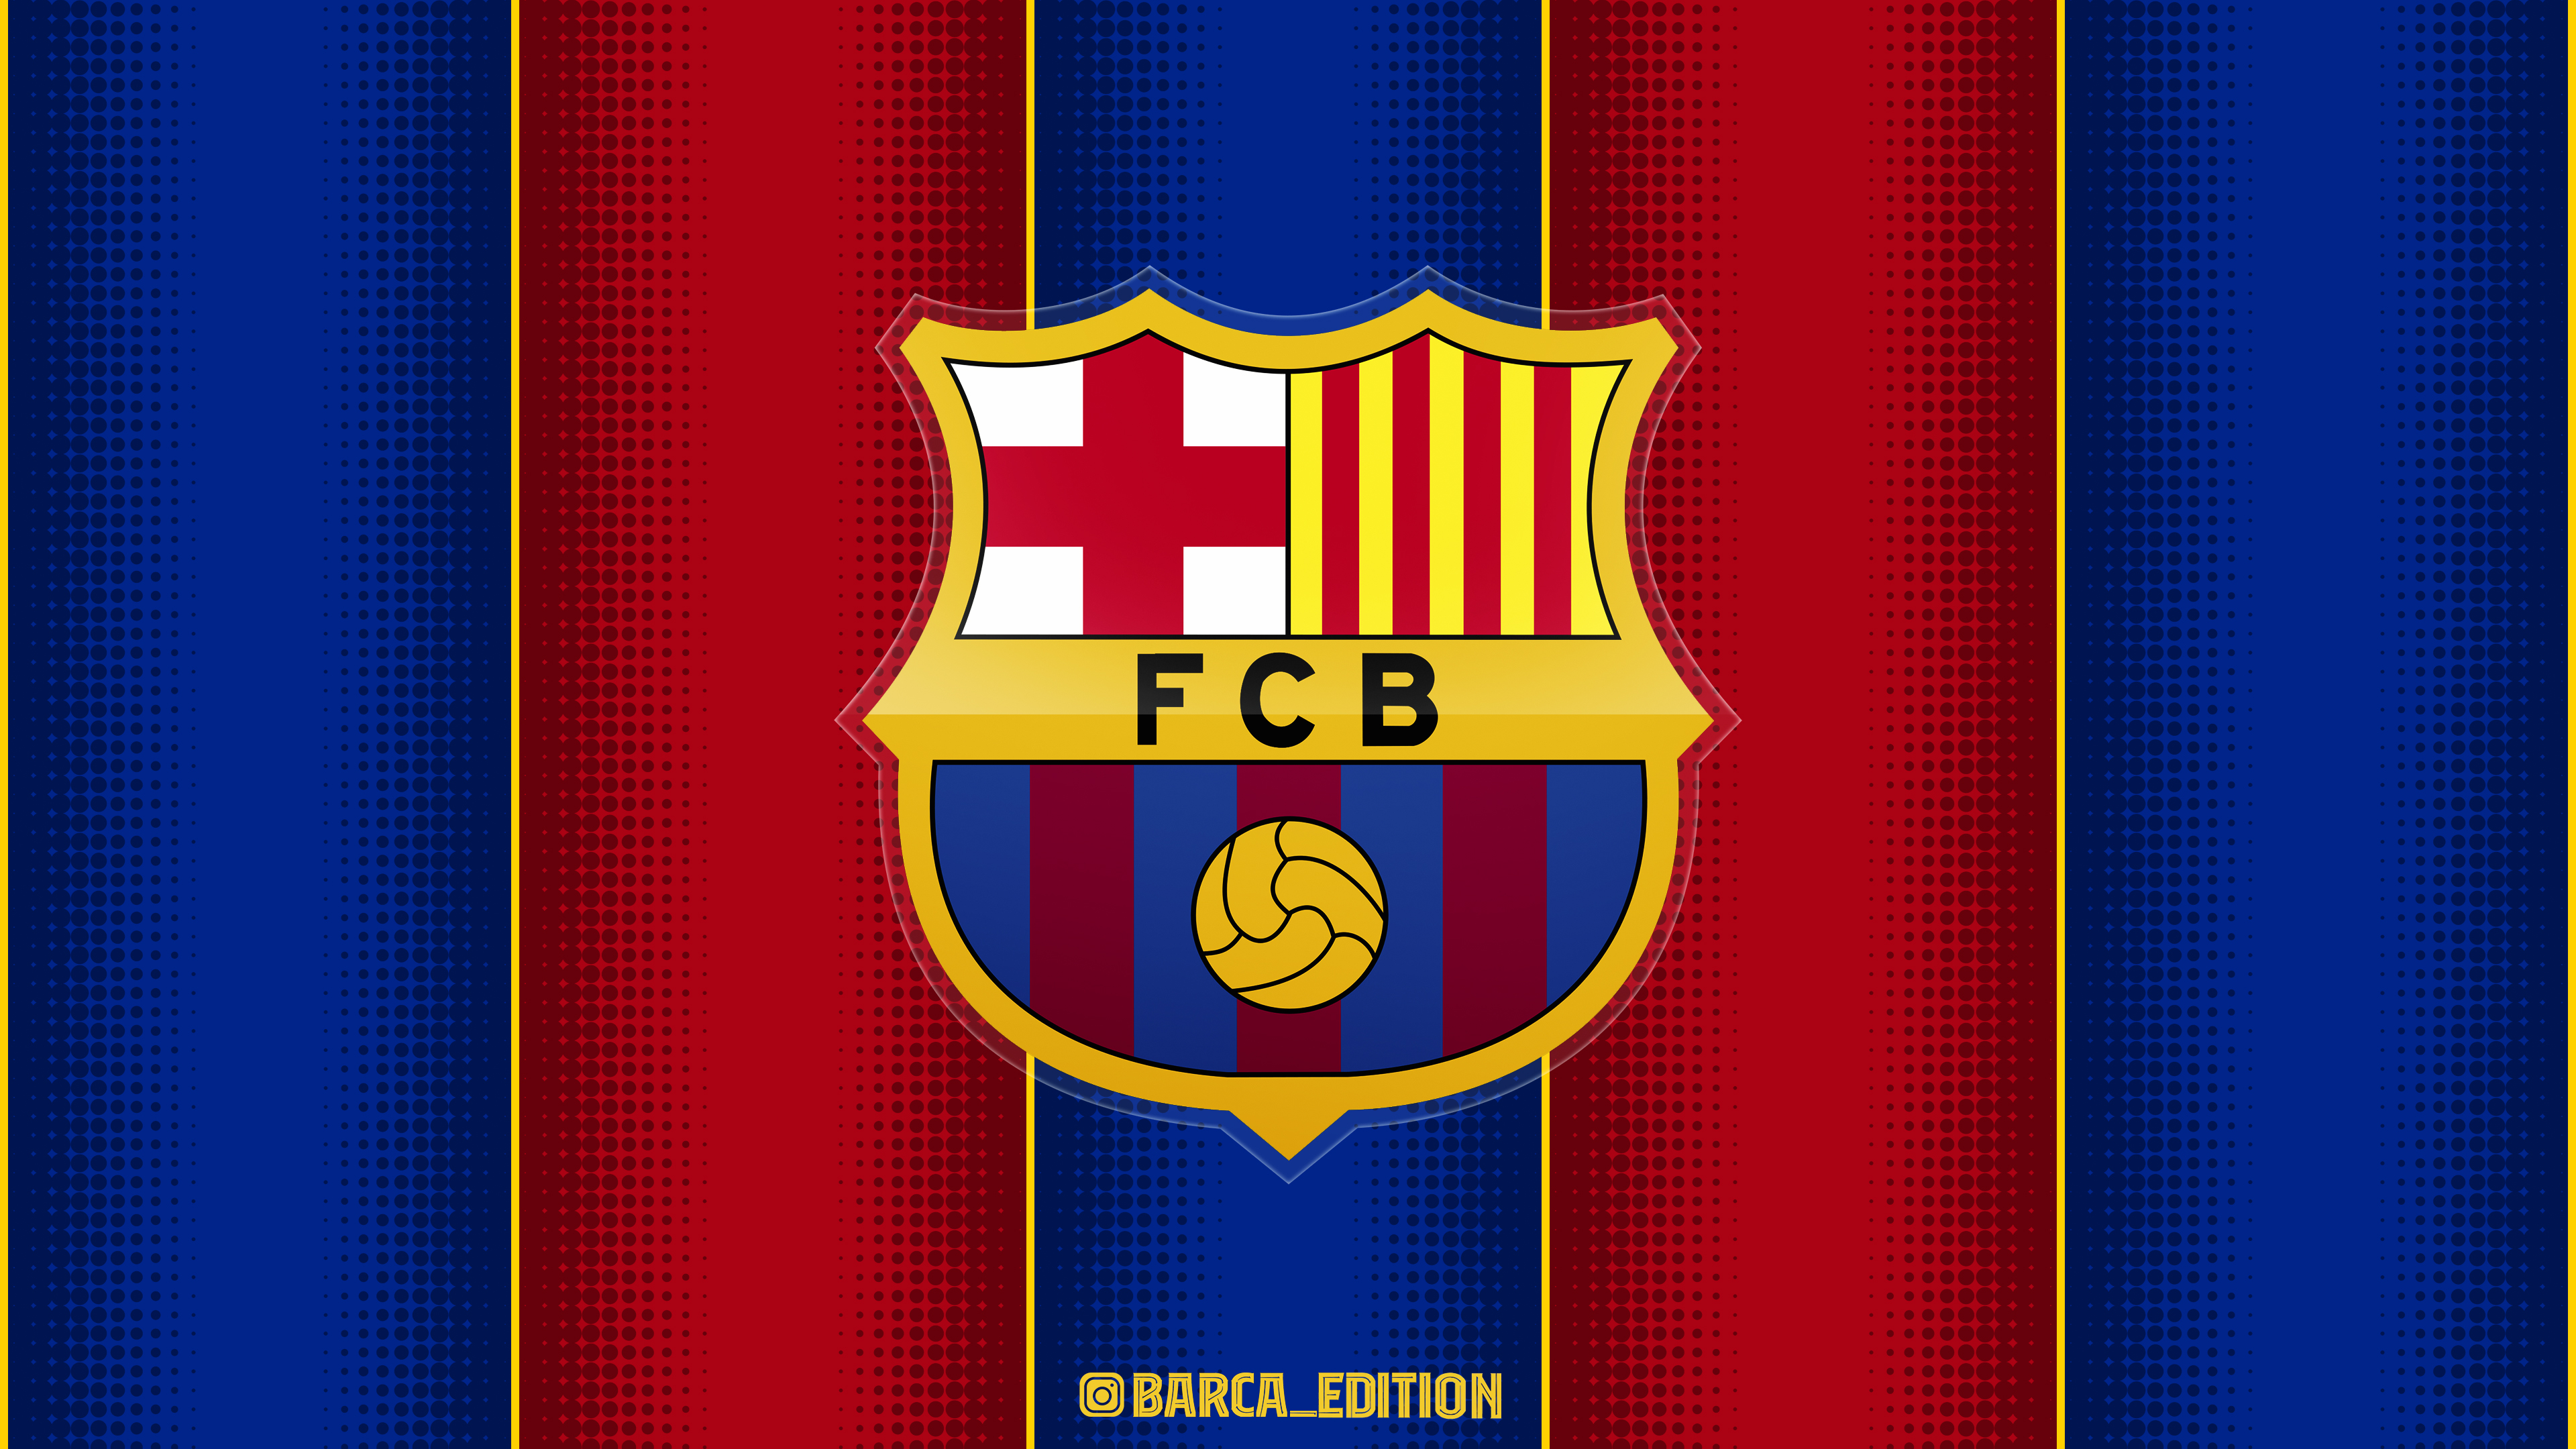 FC Barcelona 2021 WALLPAPER 4K by SelvedinFCB on